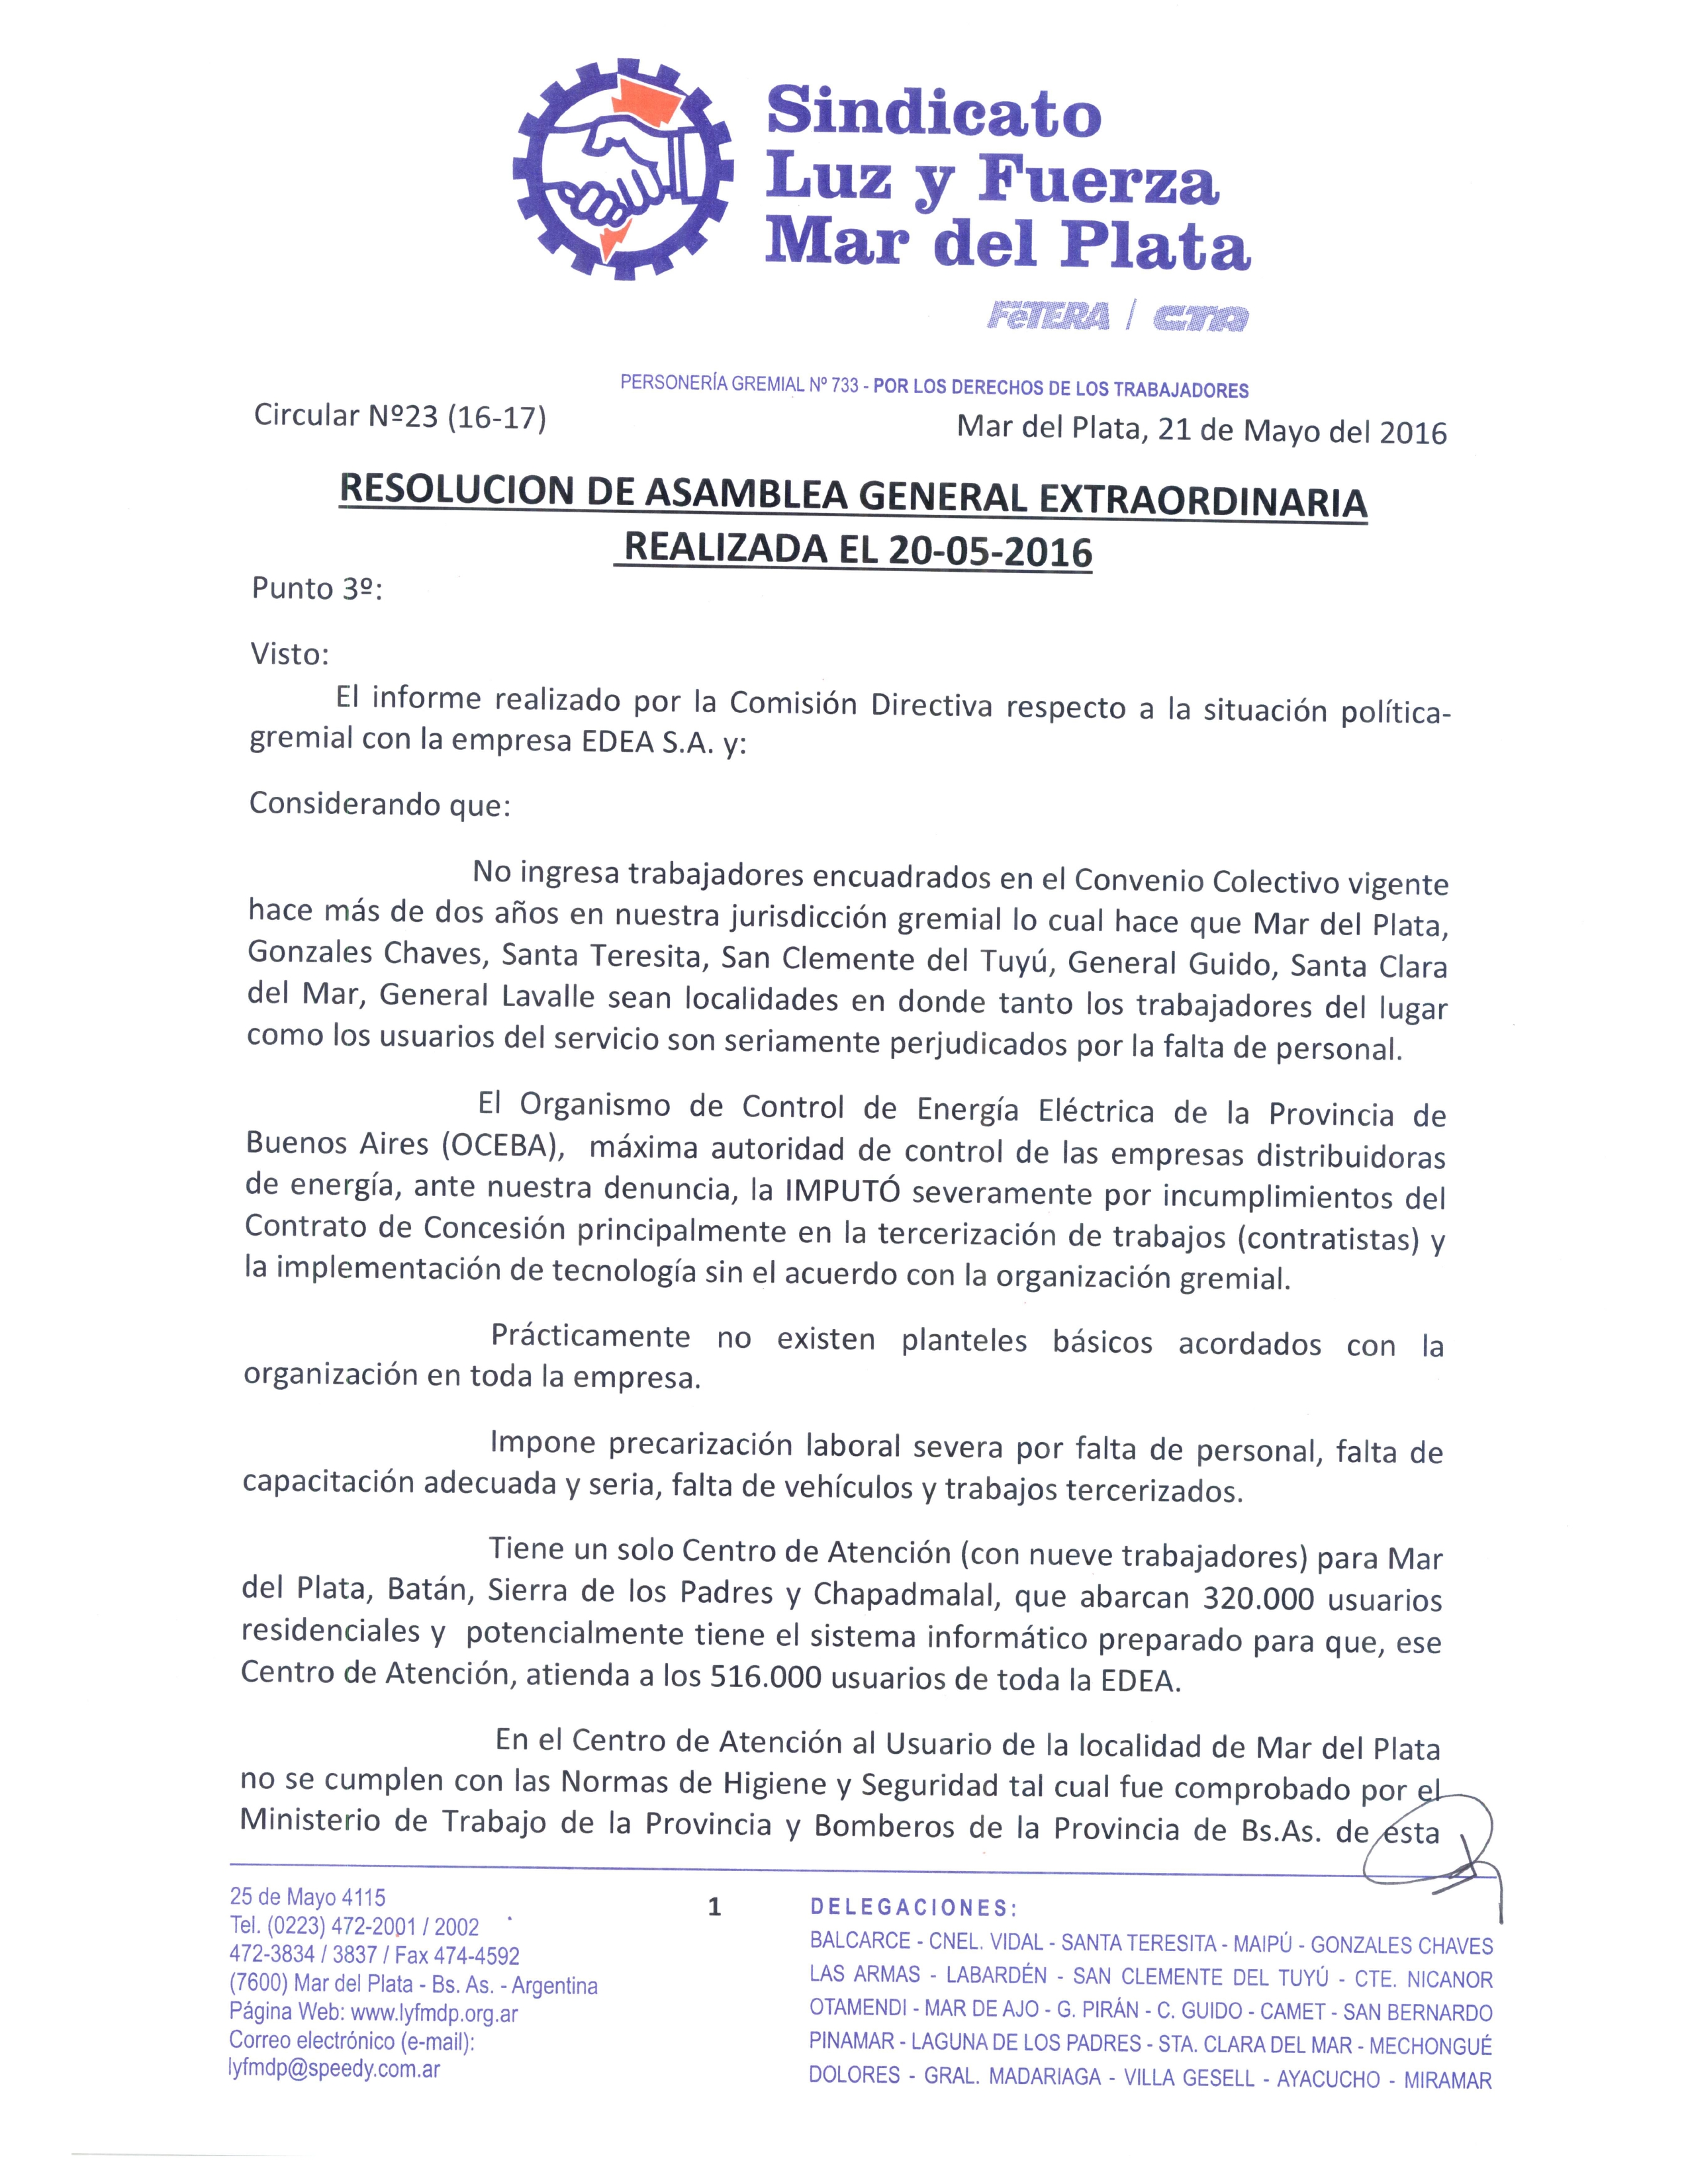 RESOLUCIÓN DE ASAMBLEA GENERAL EXTRAORDINARIA REALIZADA EL 20-05-2016